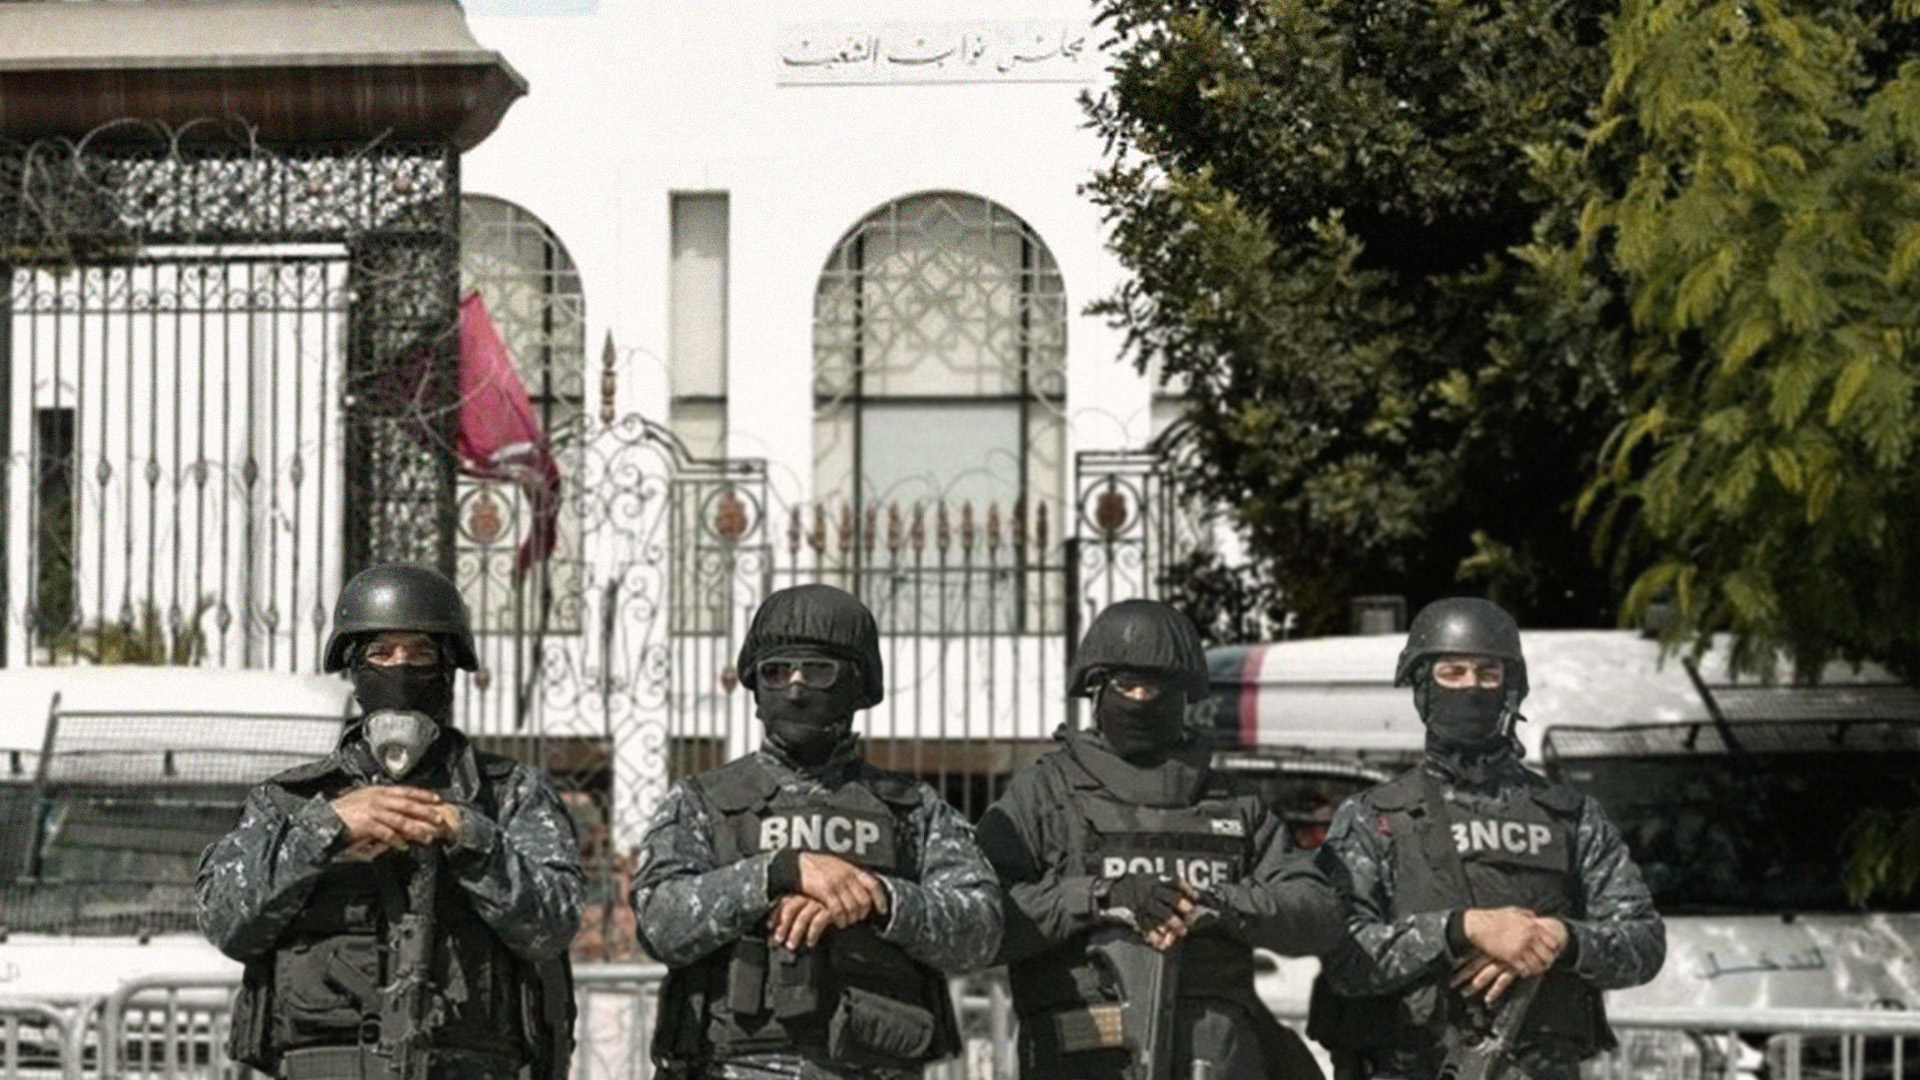 صورة السلطات التونسية تعتقل أفراداً لضلوعهم في أعمال تبديل هيئة الدولة وكأنهم قيس سعيد